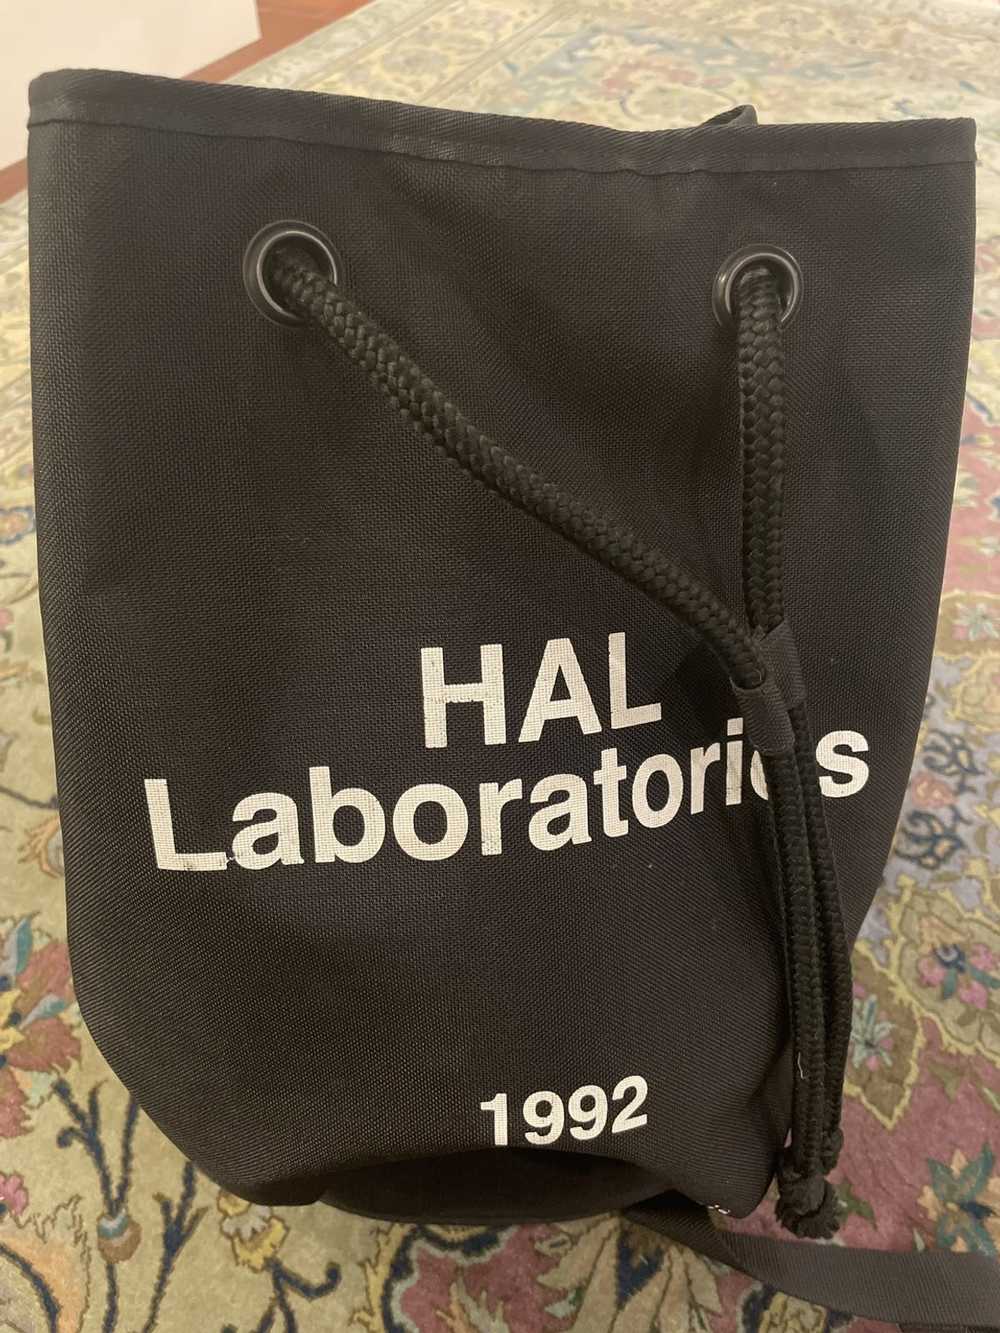 Undercover FW18 HAL Laboratories nylon bag - image 2